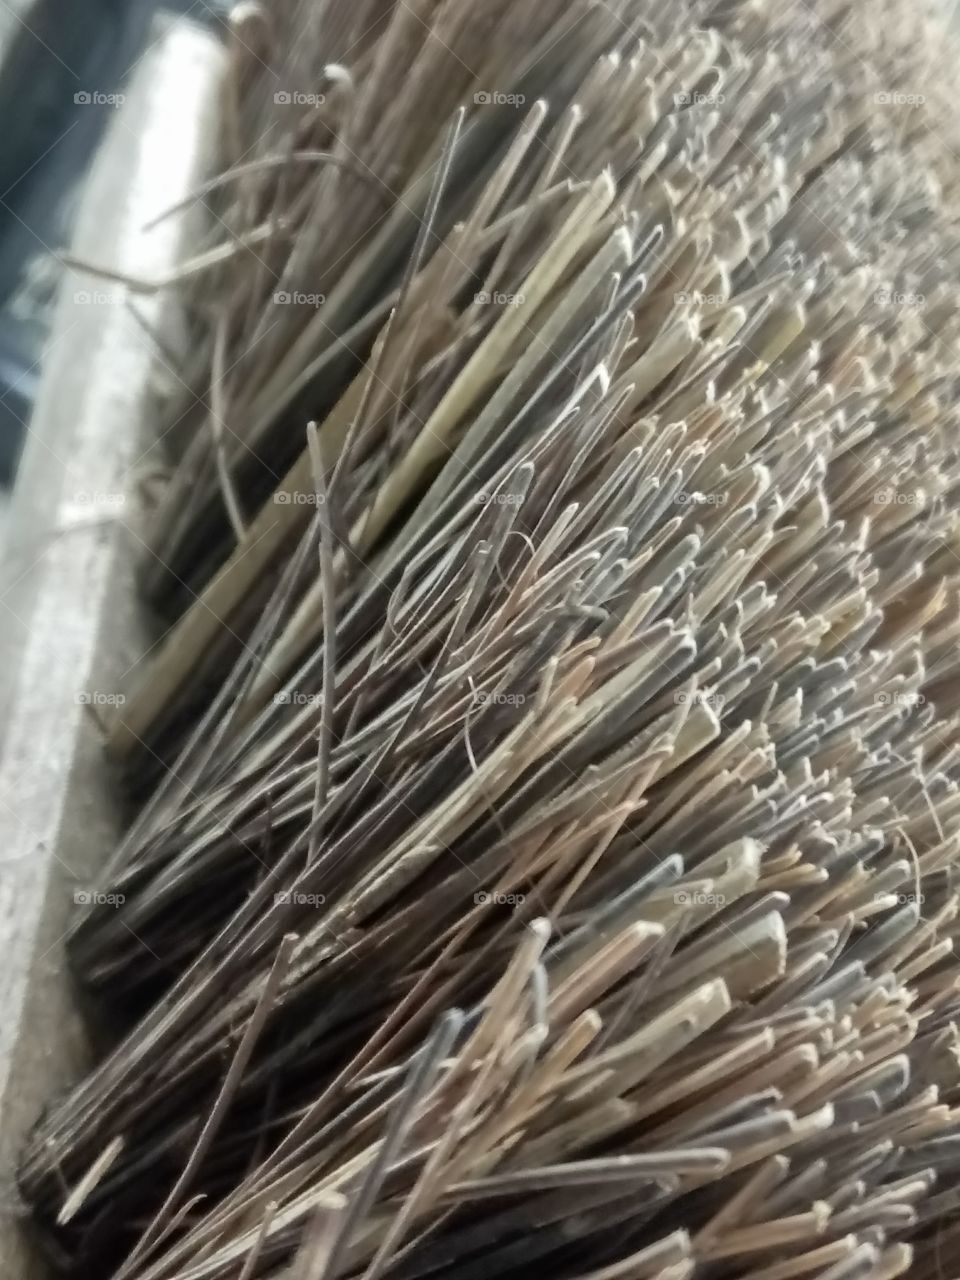 Close up of brush bristles